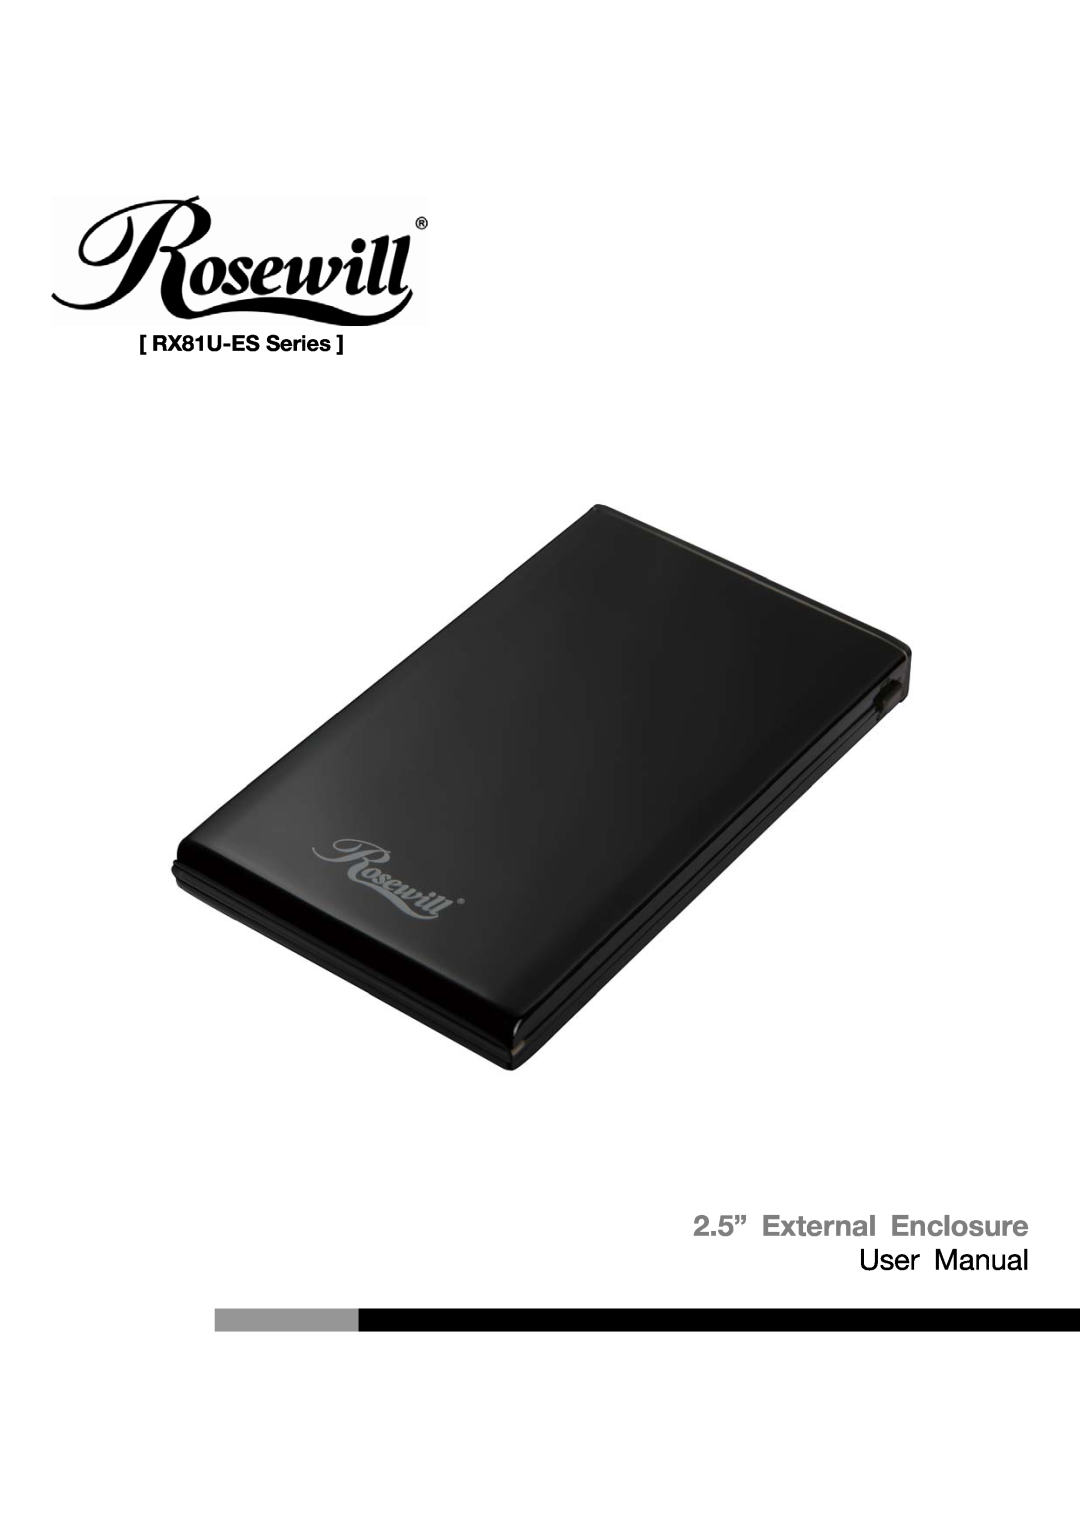 Rosewill user manual RX81U-ES Series, 2.5” External Enclosure, User Manual 